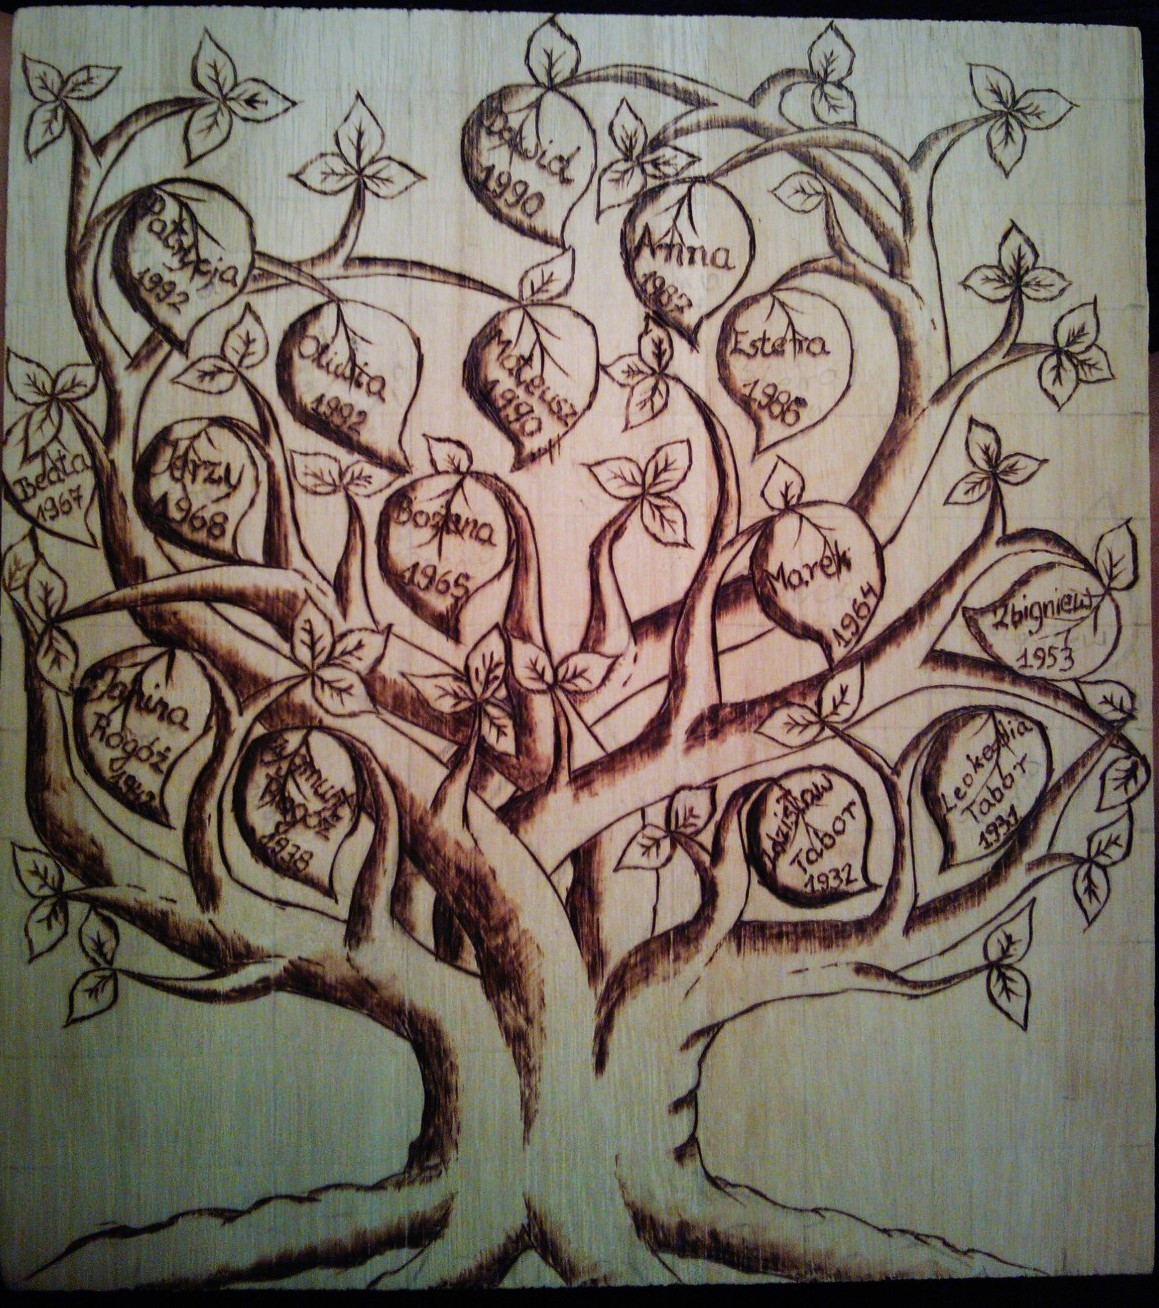 family_tree